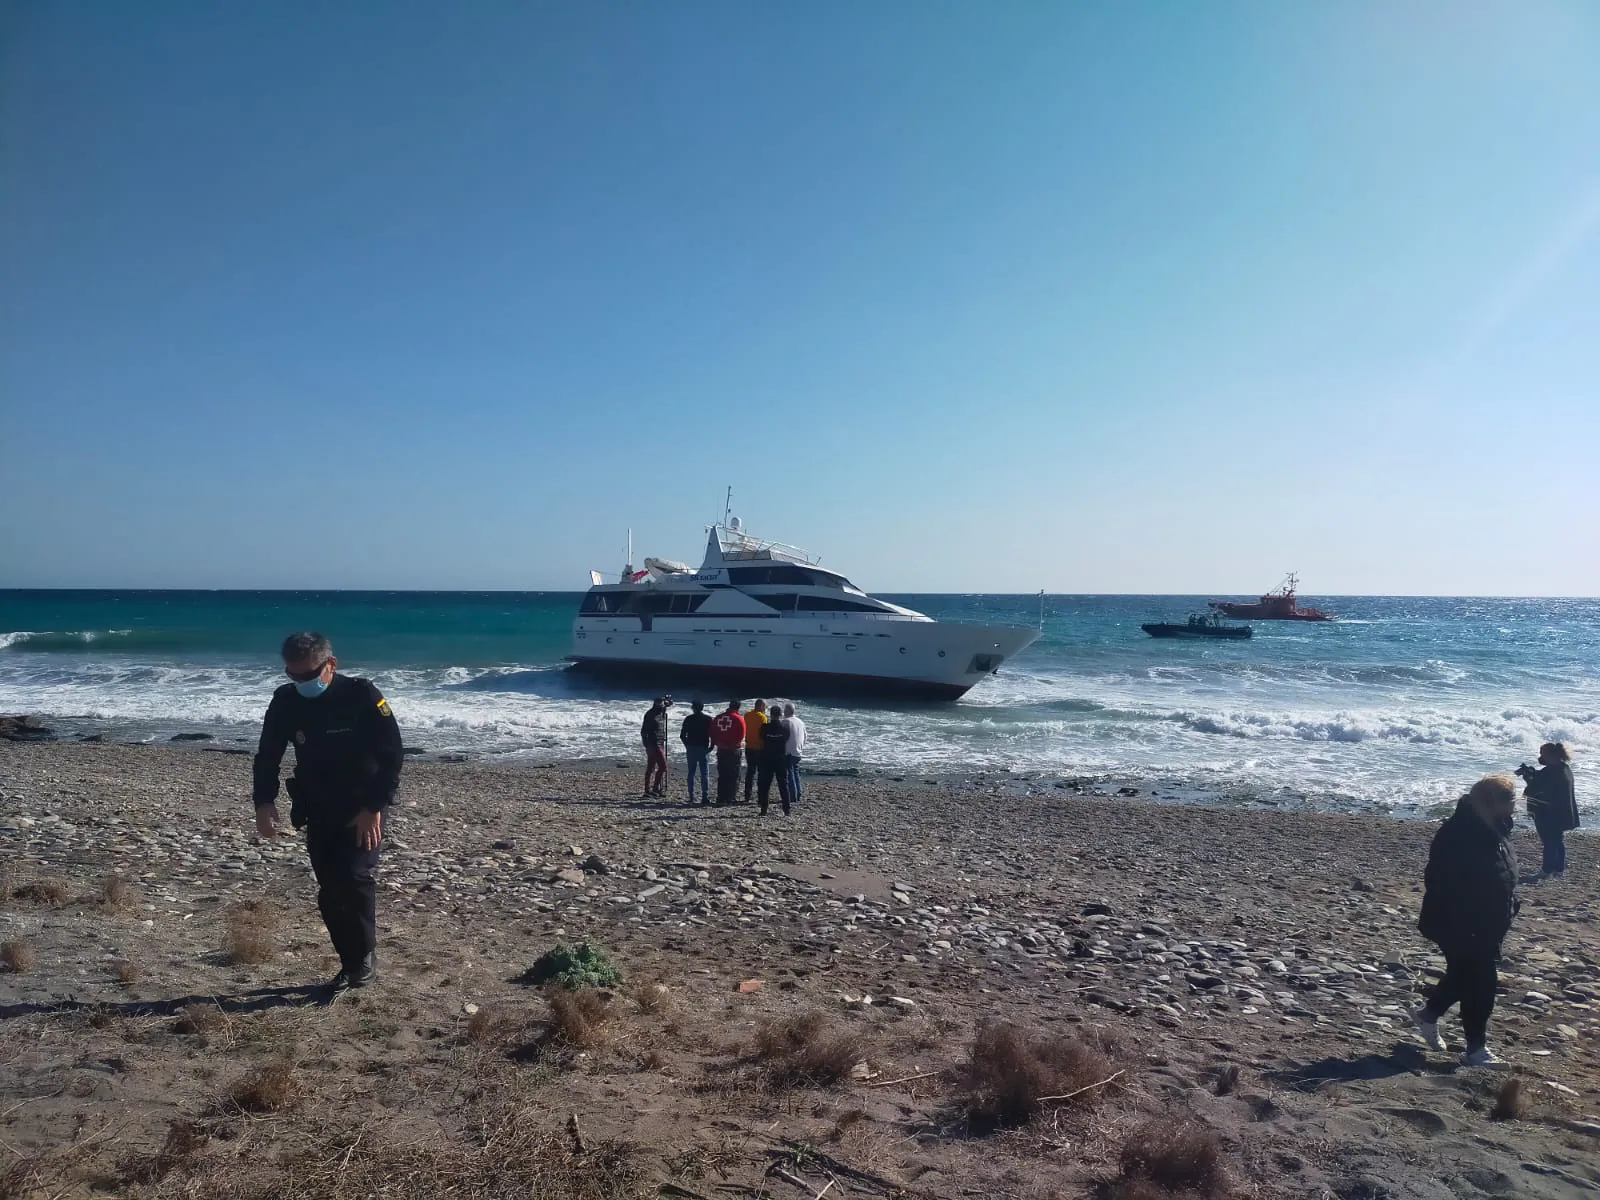 Una avería en la embarcación ha provocado que vare con tres ocupantes dentro